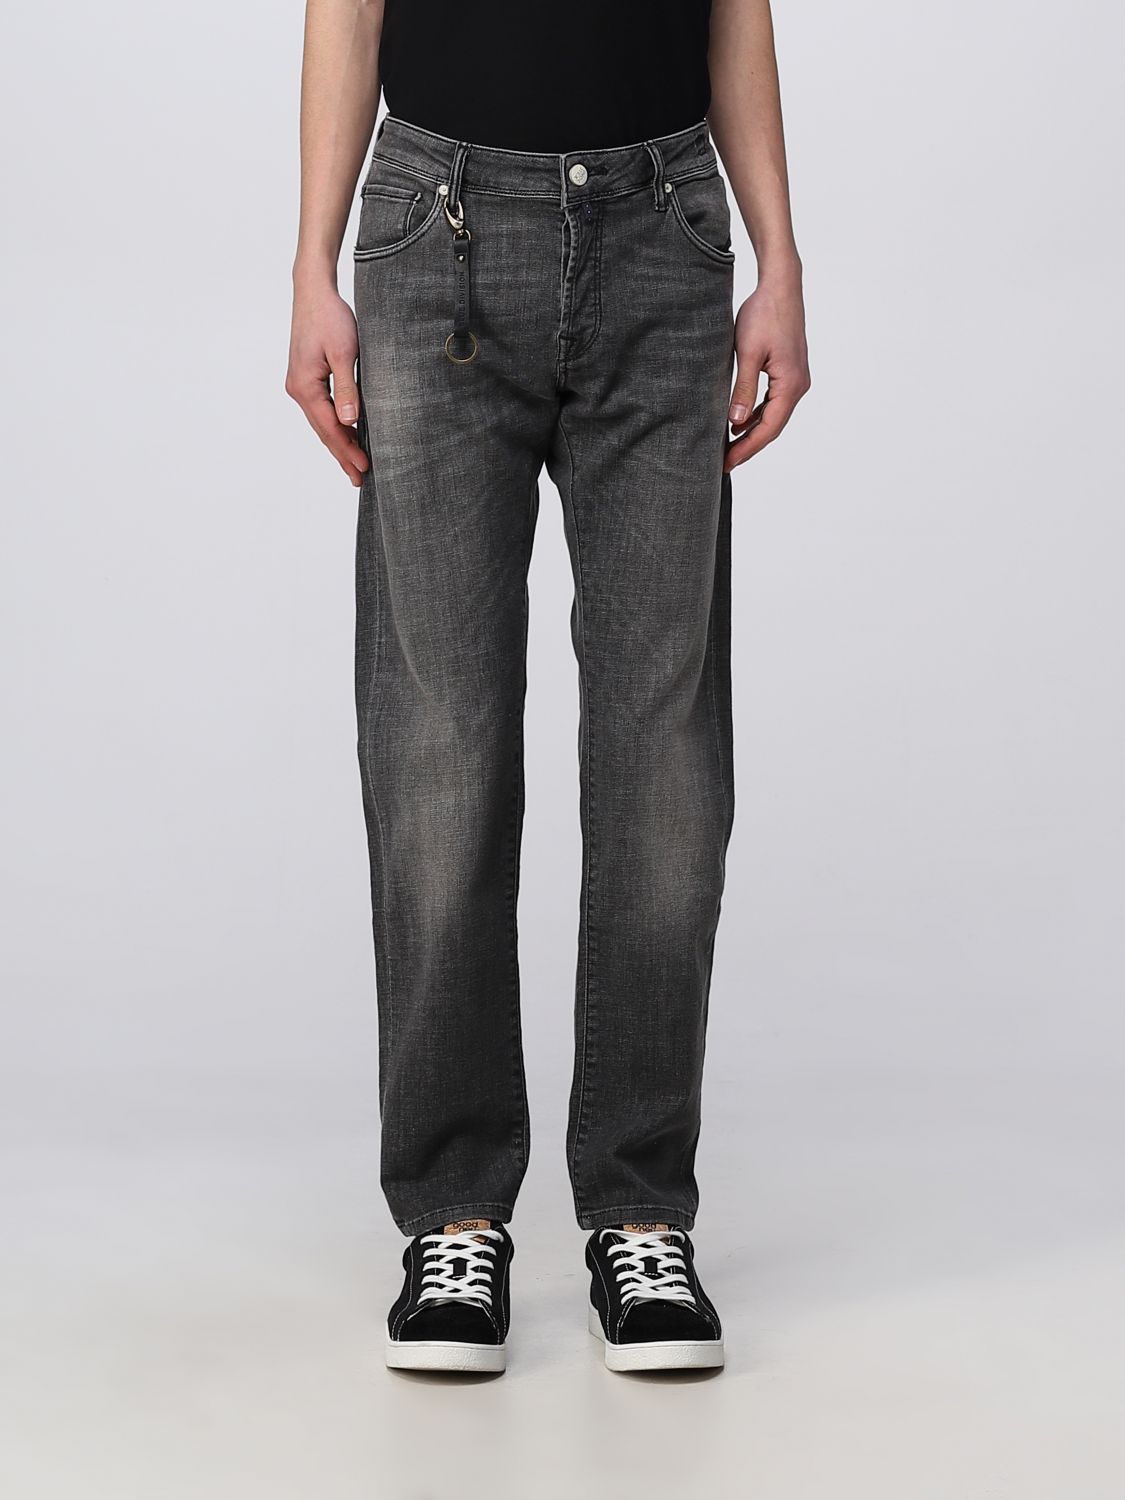 gek geworden Morse code wijsheid INCOTEX: jeans for man - Grey | Incotex jeans BDPS000202877W3 online on  GIGLIO.COM